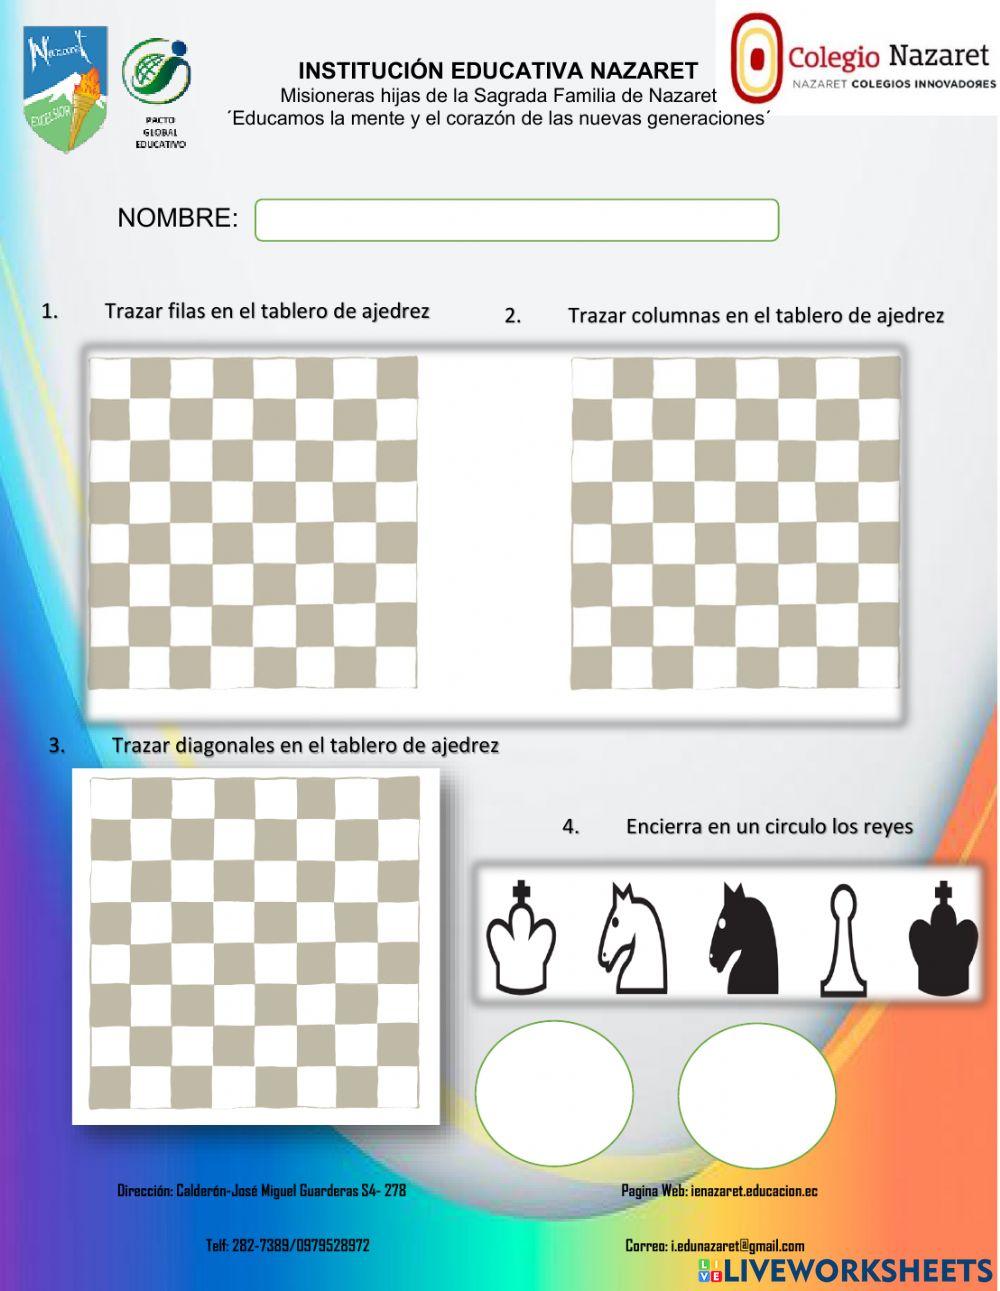 Evaluación de ajedrez